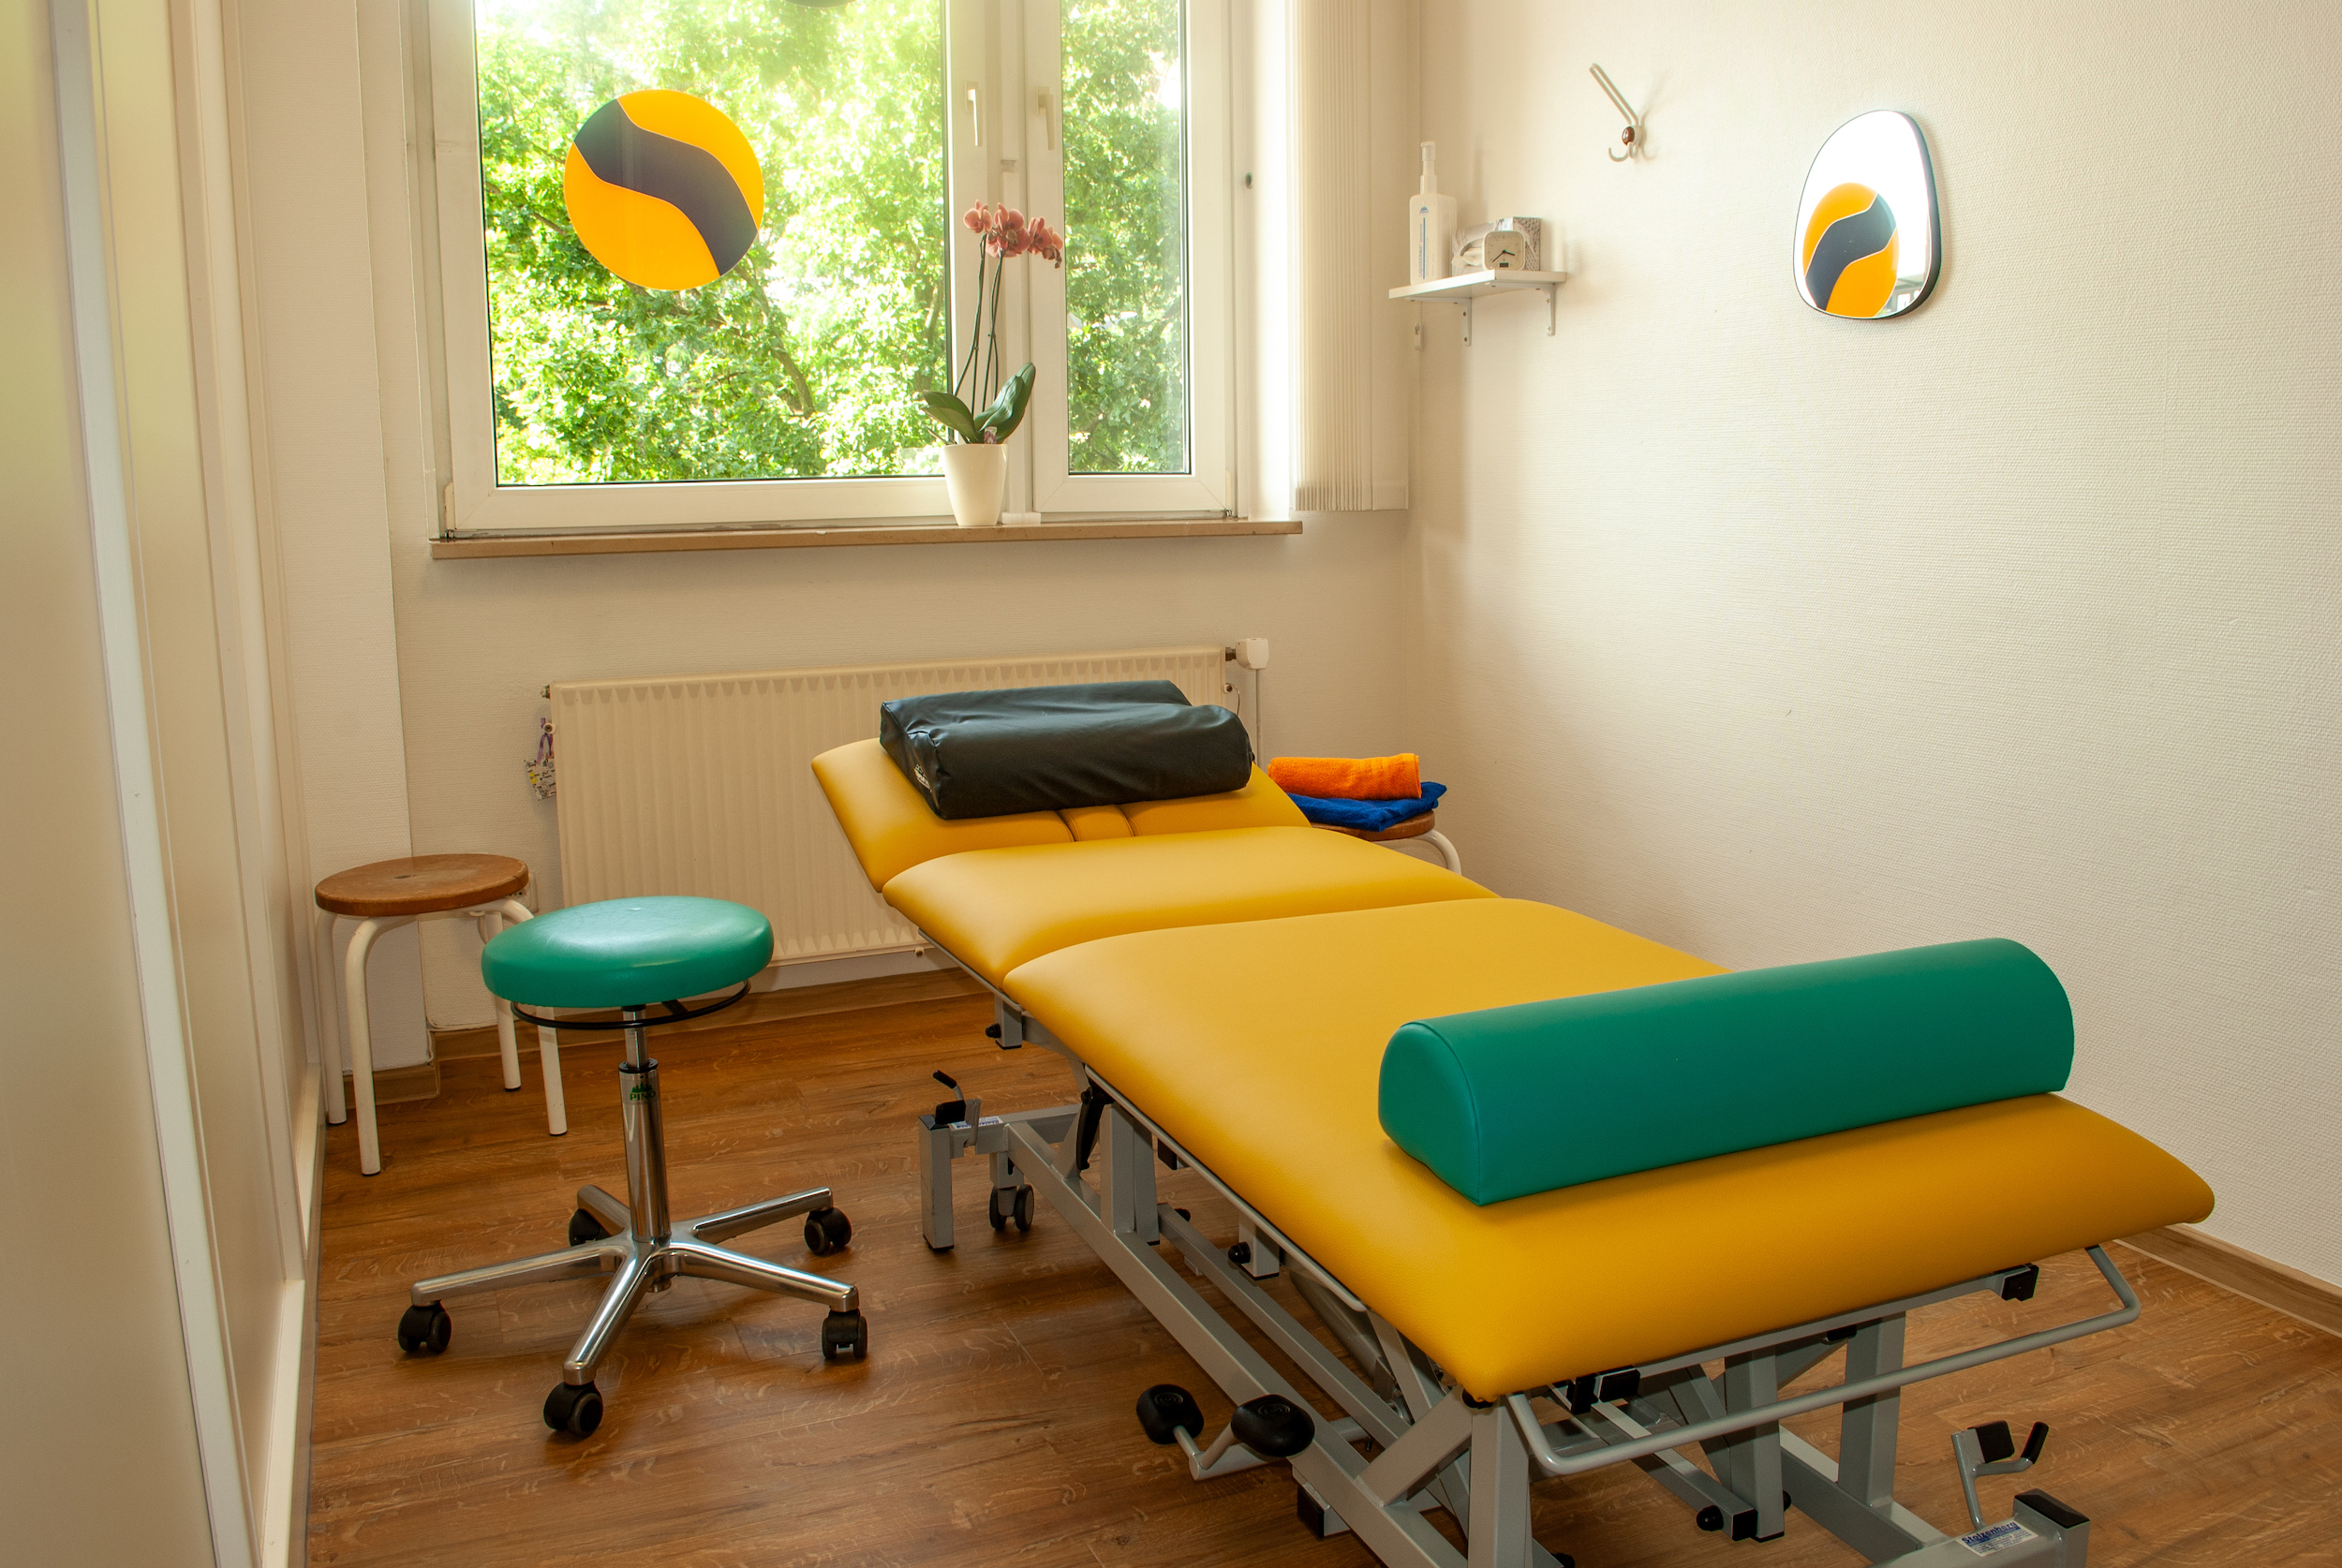 Foto von einem Therapieraum mit einer Therapieliege in gelb